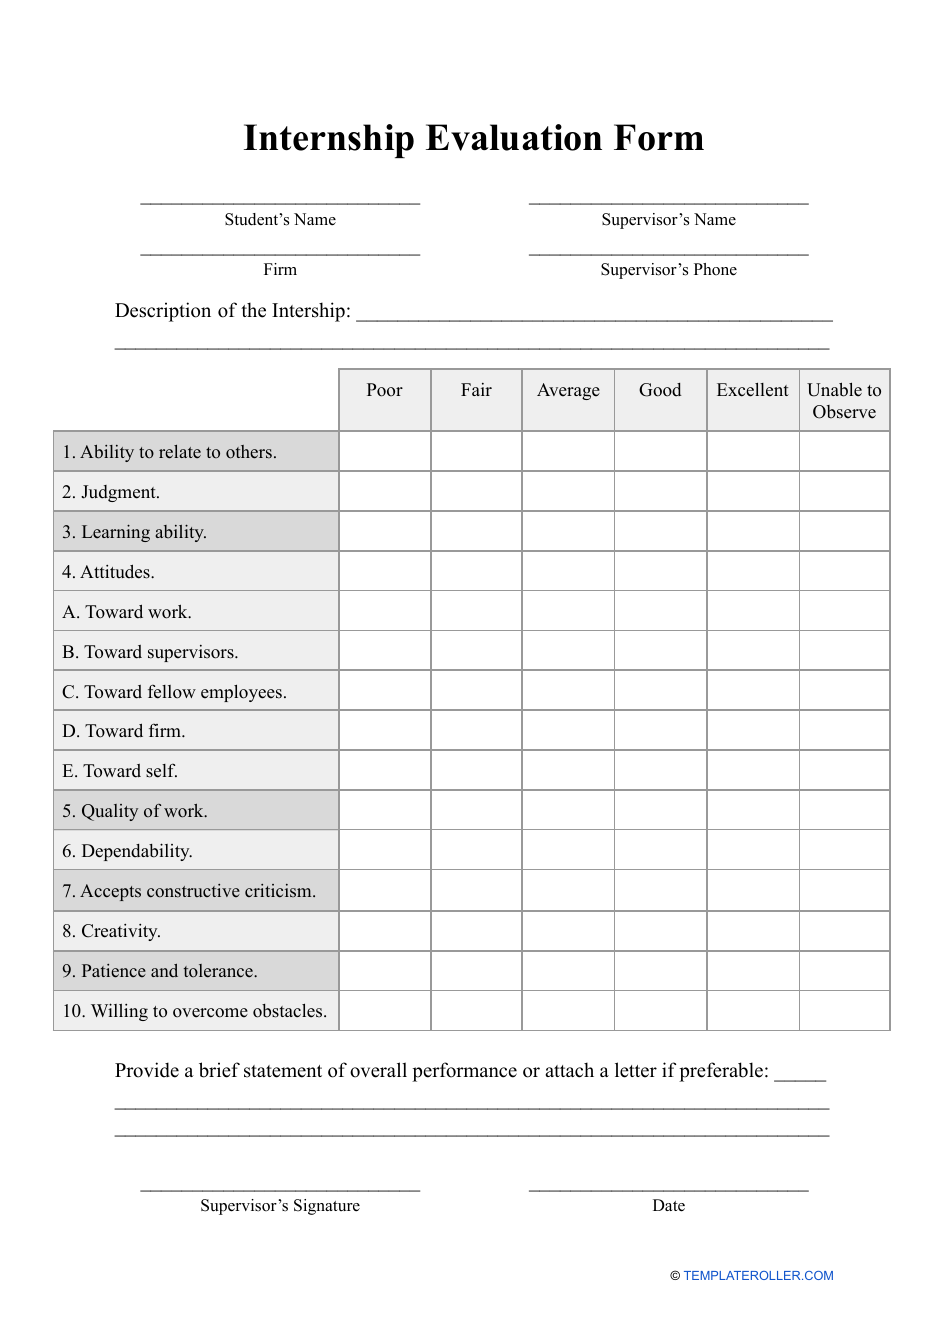 Internship Evaluation Form - Big Table, Page 1